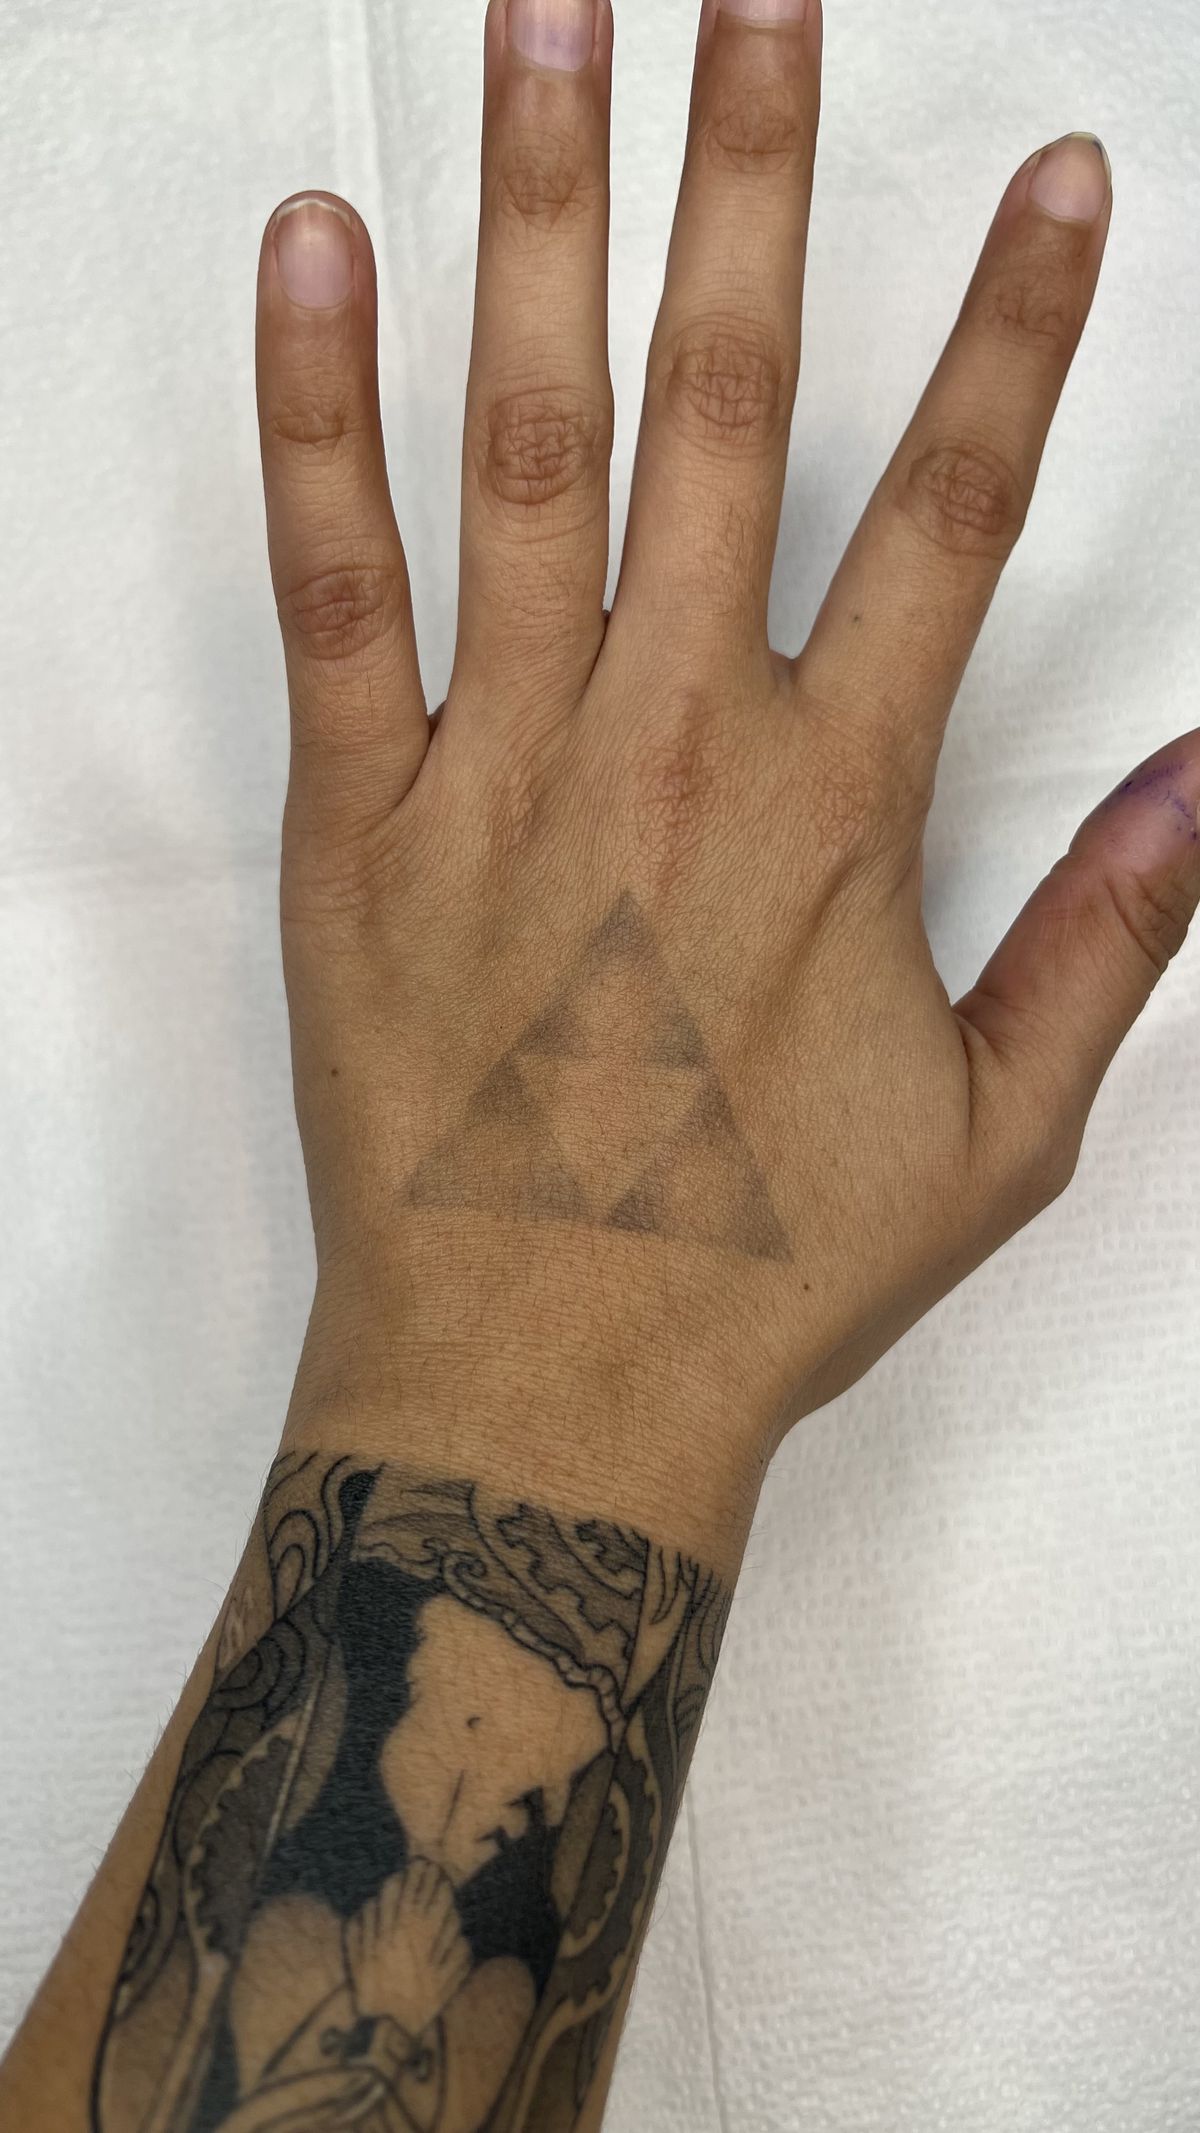 Un debole tatuaggio della Triforza sulla mano di una persona